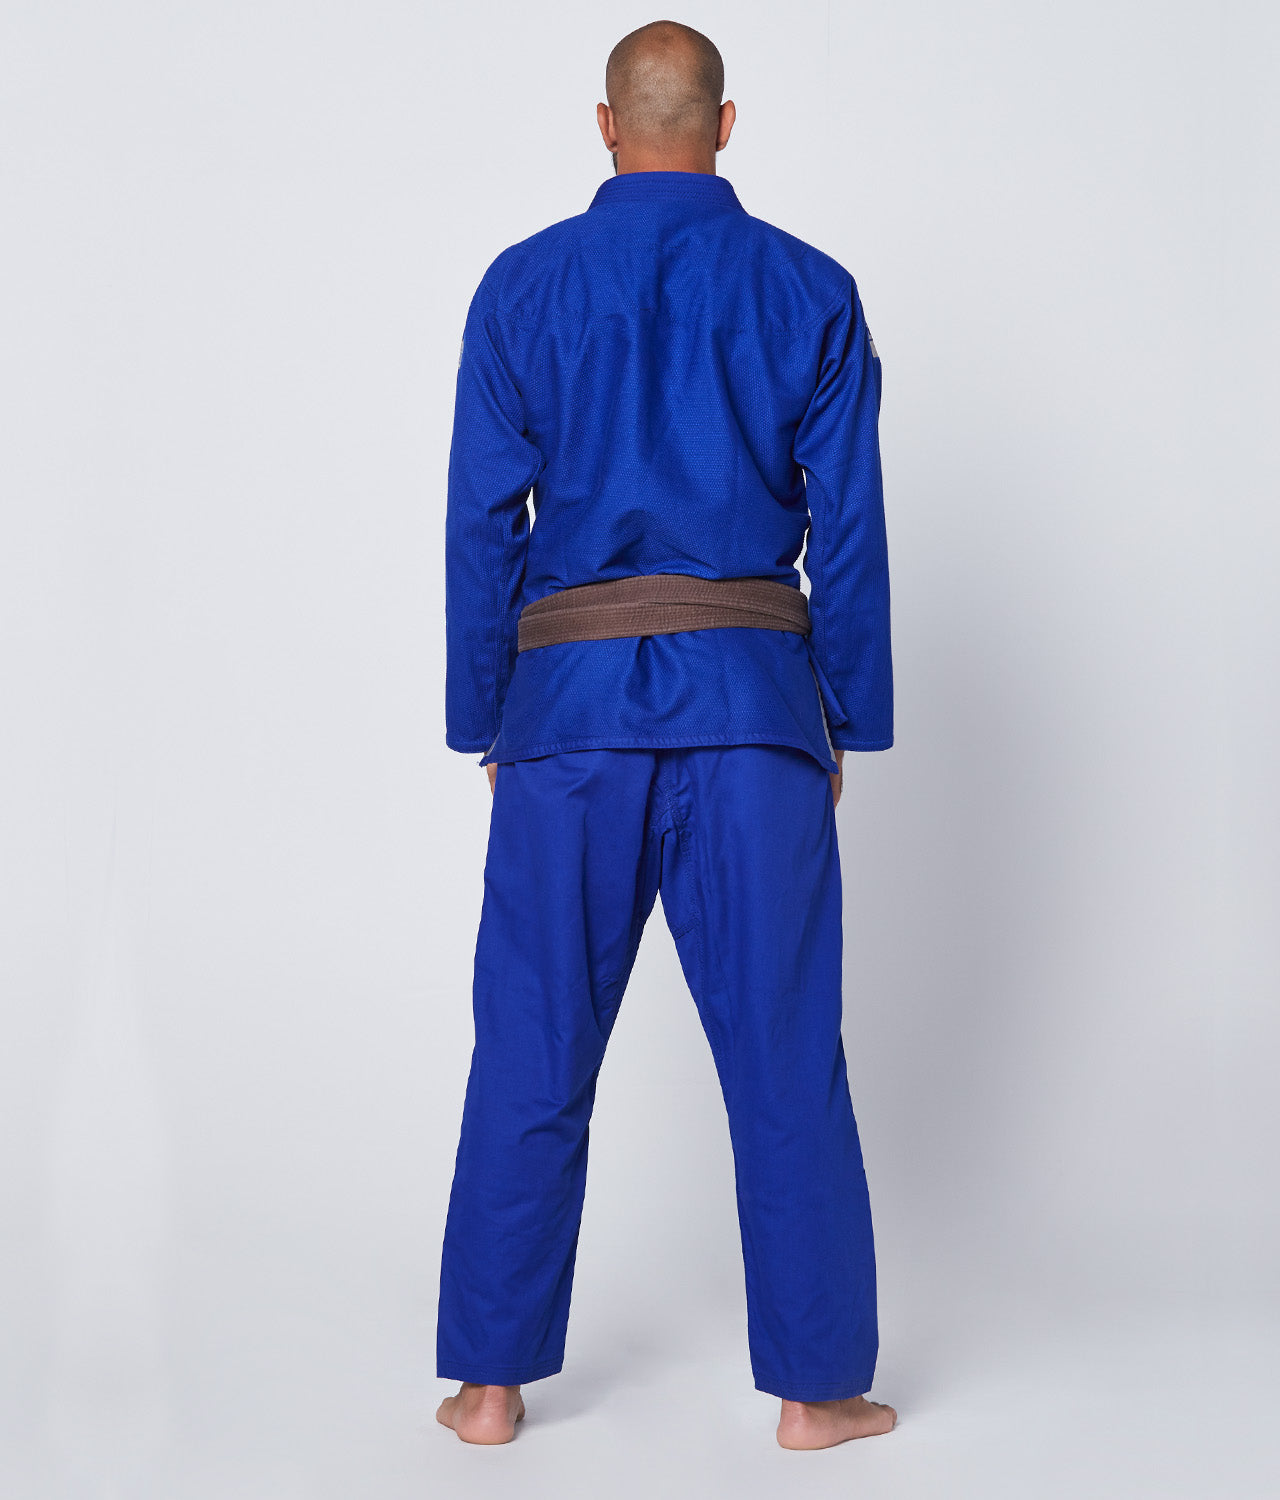 Elite Sports Men's Core Blue Brazilian Jiu Jitsu BJJ Gi Back View